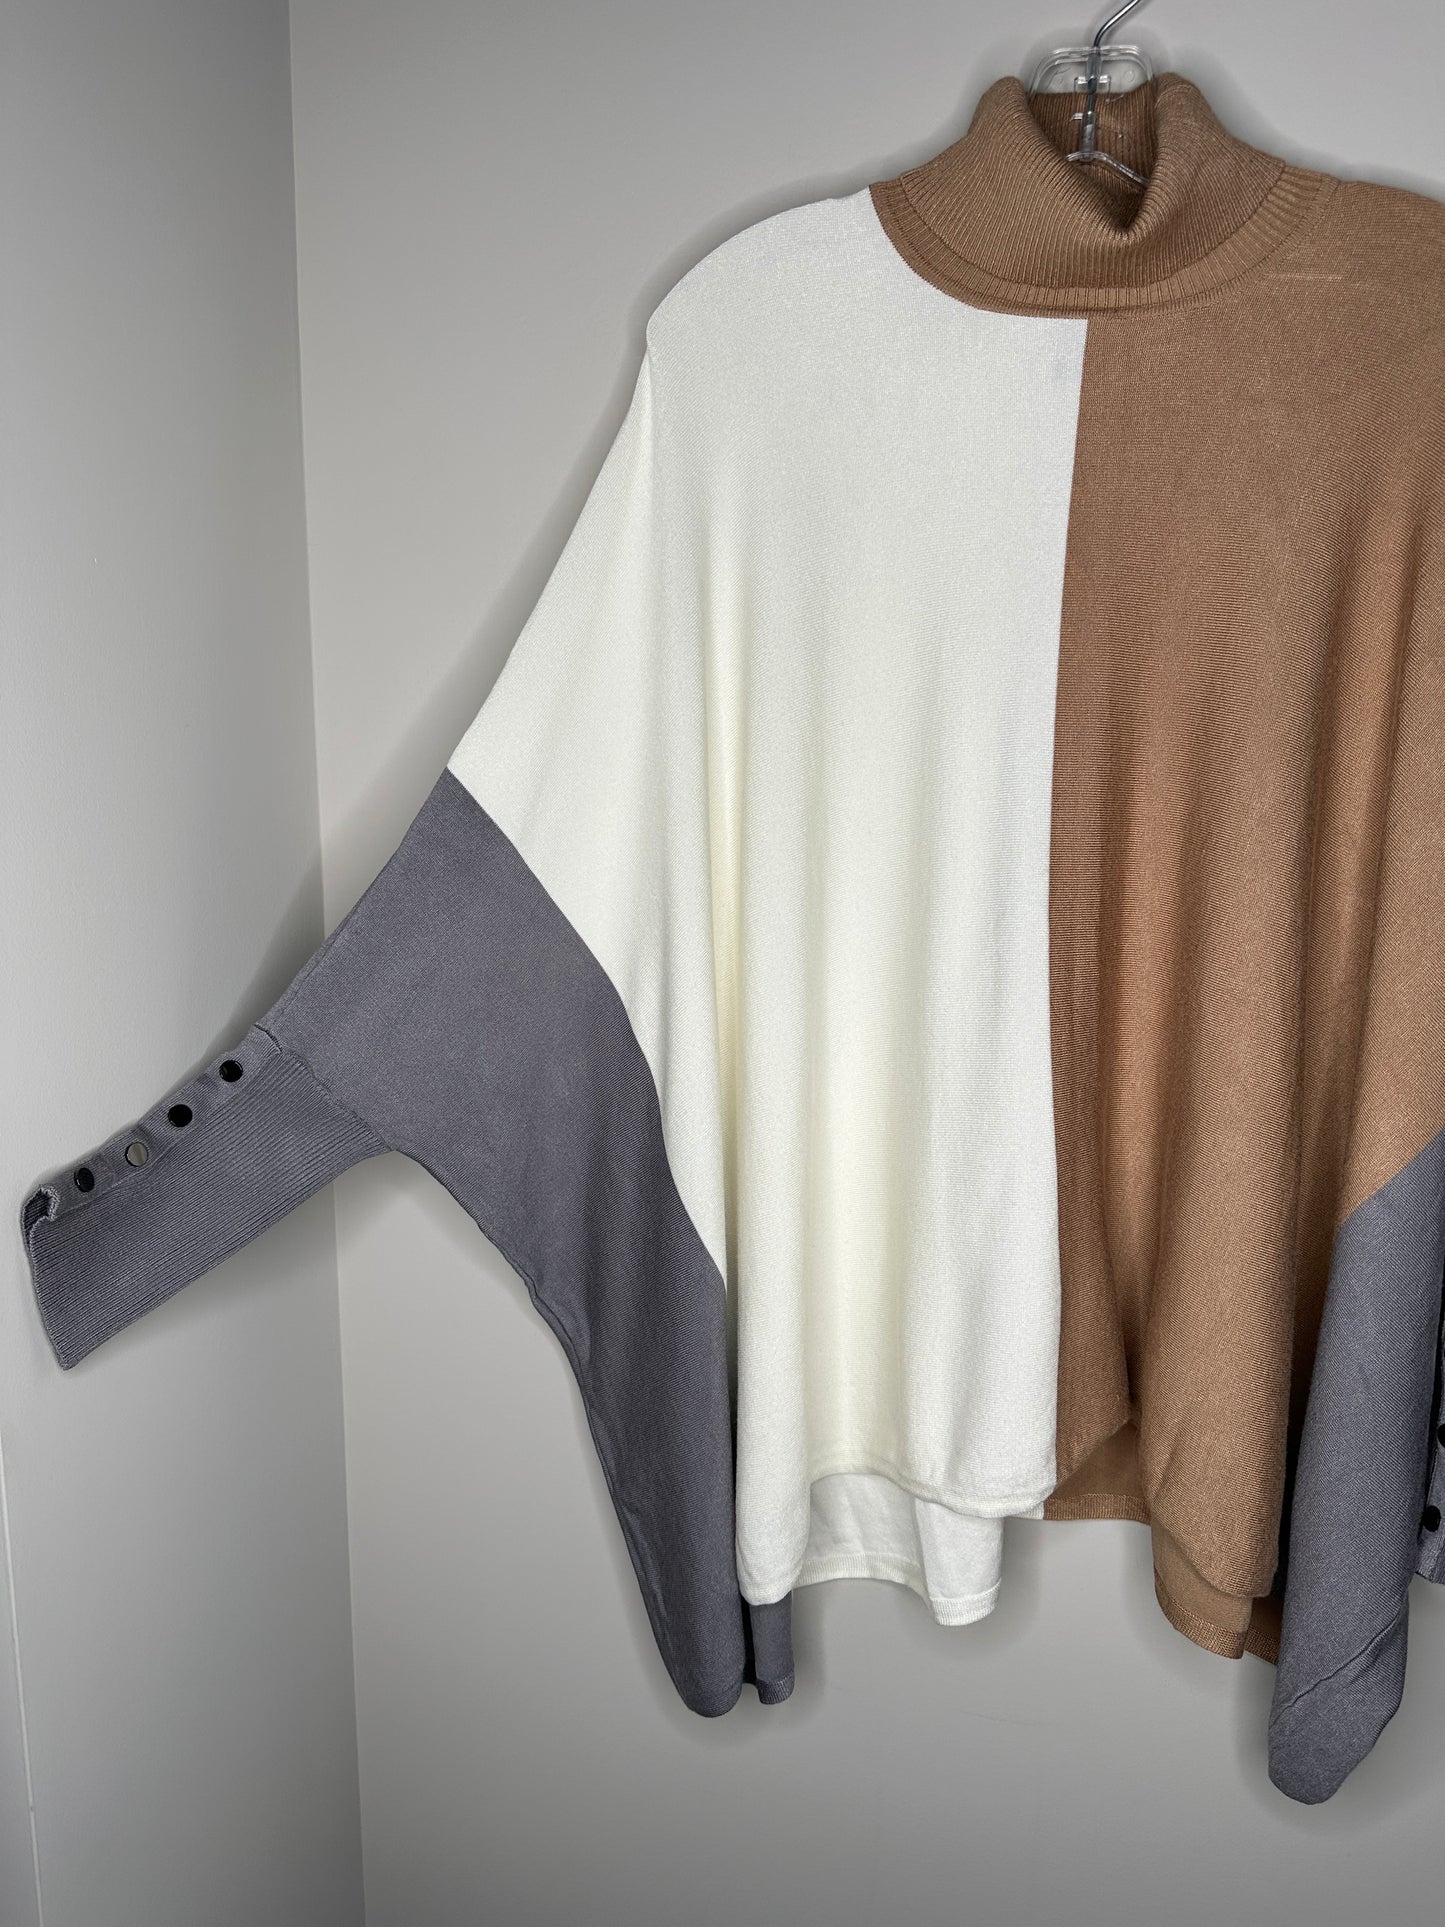 Alfani Woman Size 0X White Tan Gray Turtleneck Colorblock Poncho Sweater